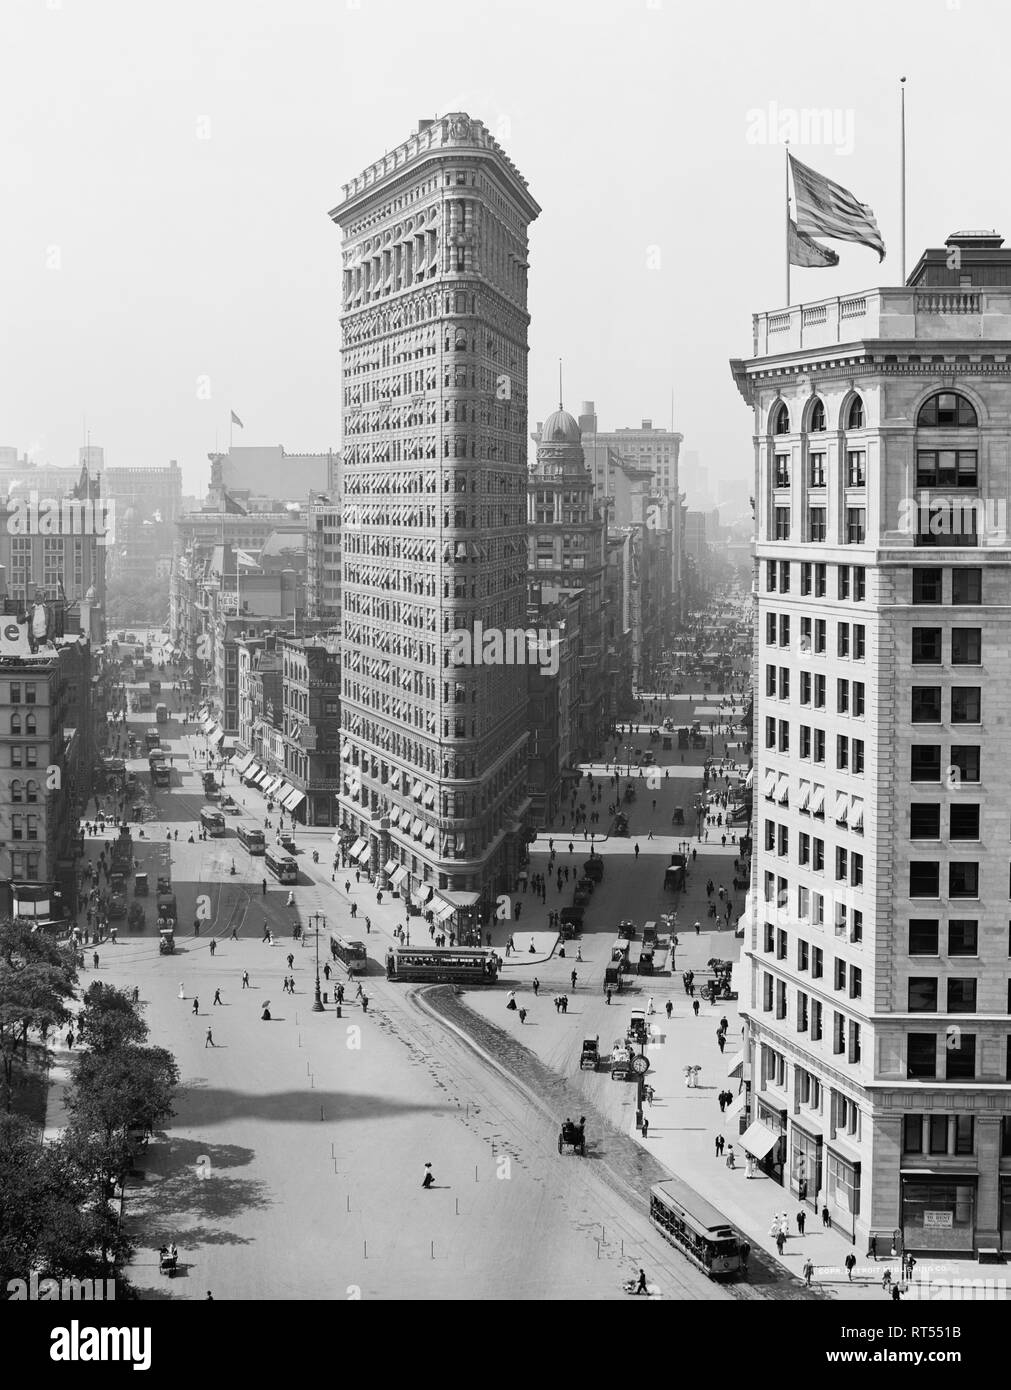 Amerikanische Geschichte Bild mit dem Flatiron Building, einem ikonischen New York City Wolkenkratzer, circa 1908. Stockfoto